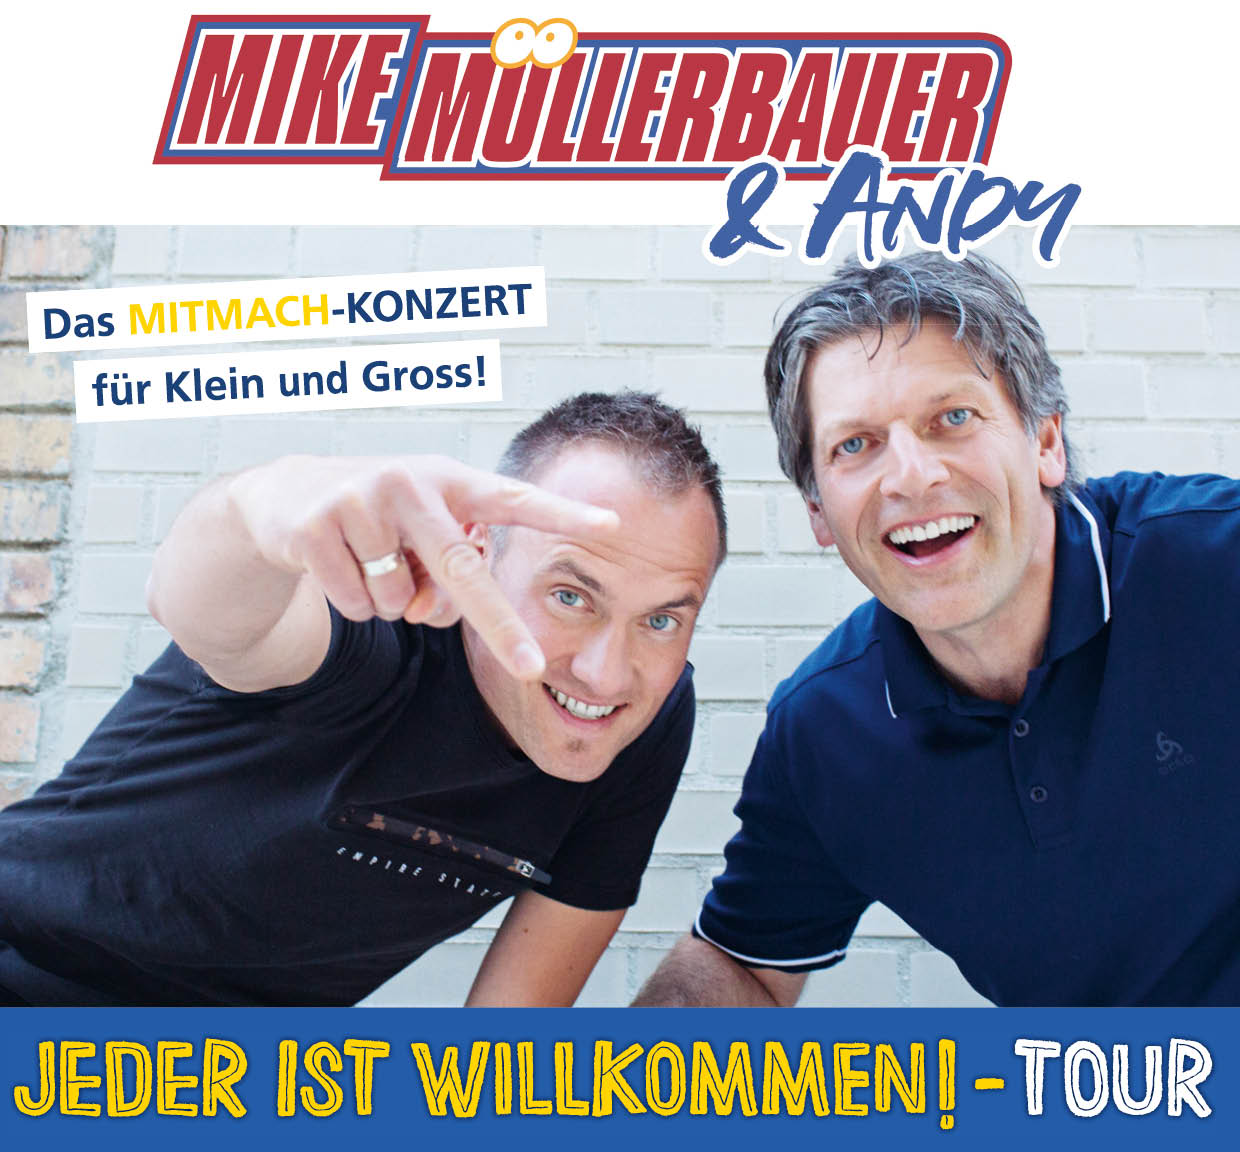 Konzert mit Mike Müllerbauer